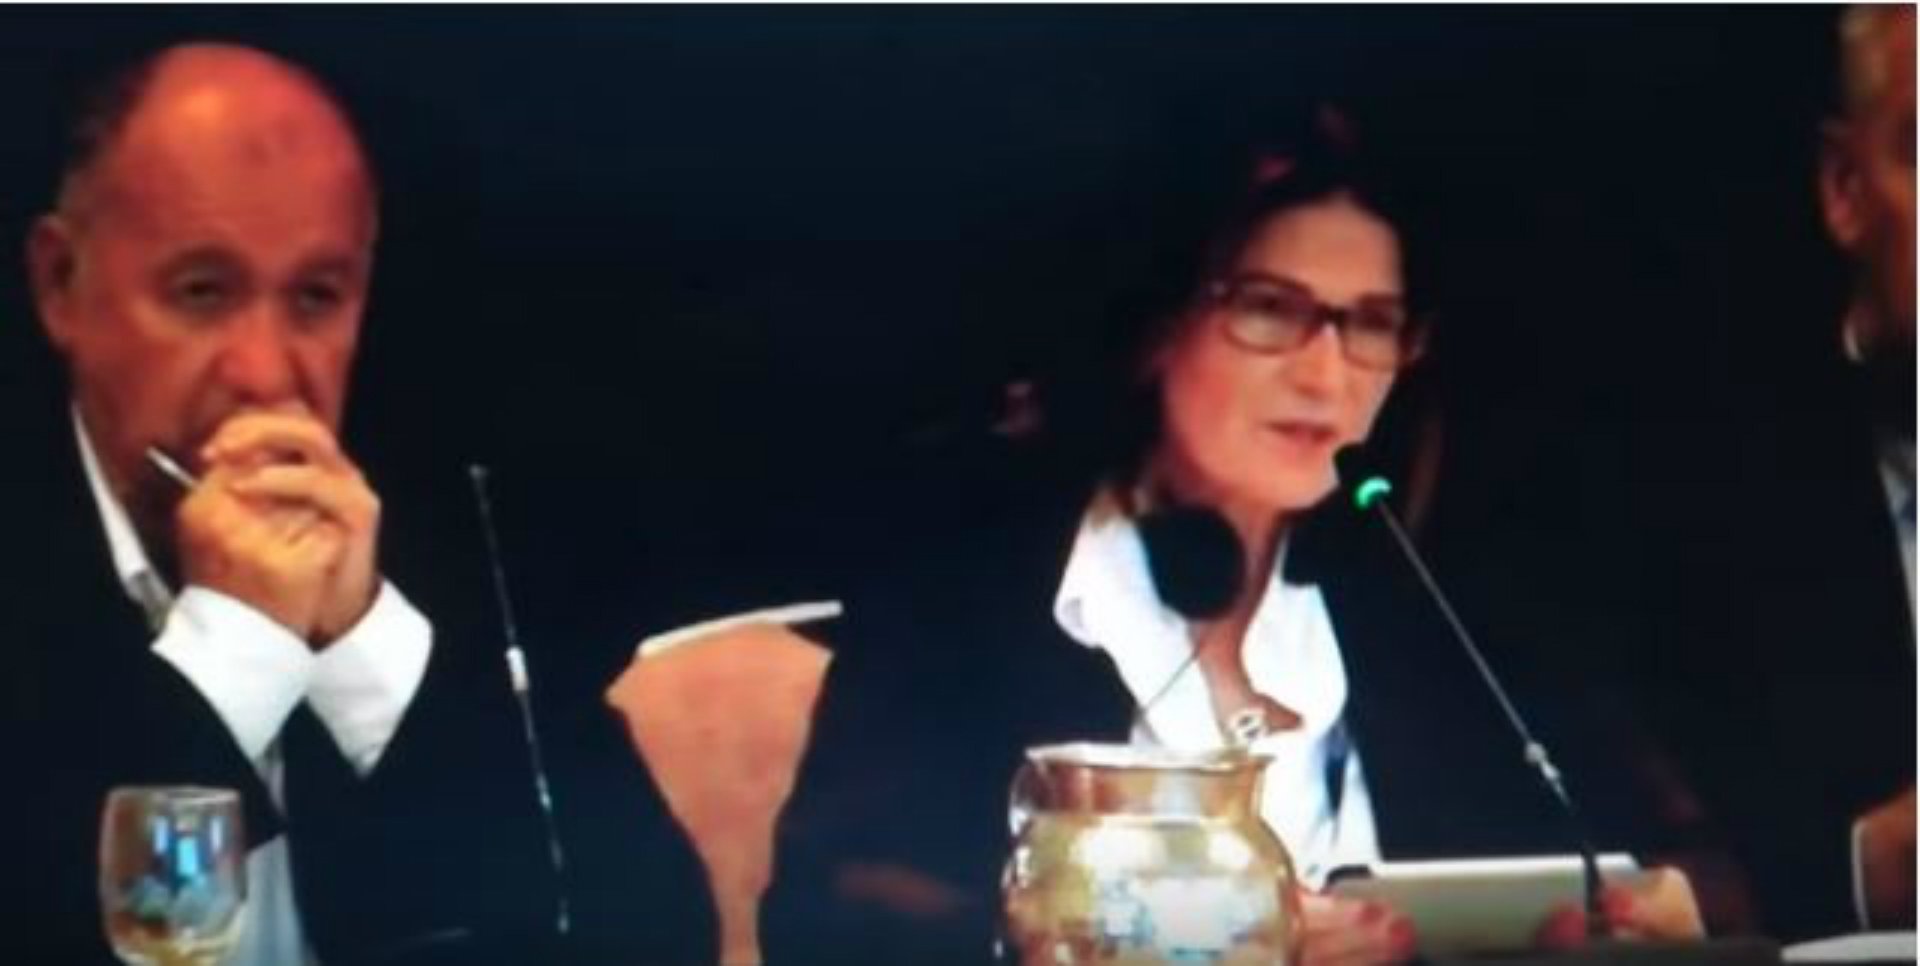 VÍDEO: La presidenta de la Federación Española de Vela hace el ridículo con un inglés lamentable